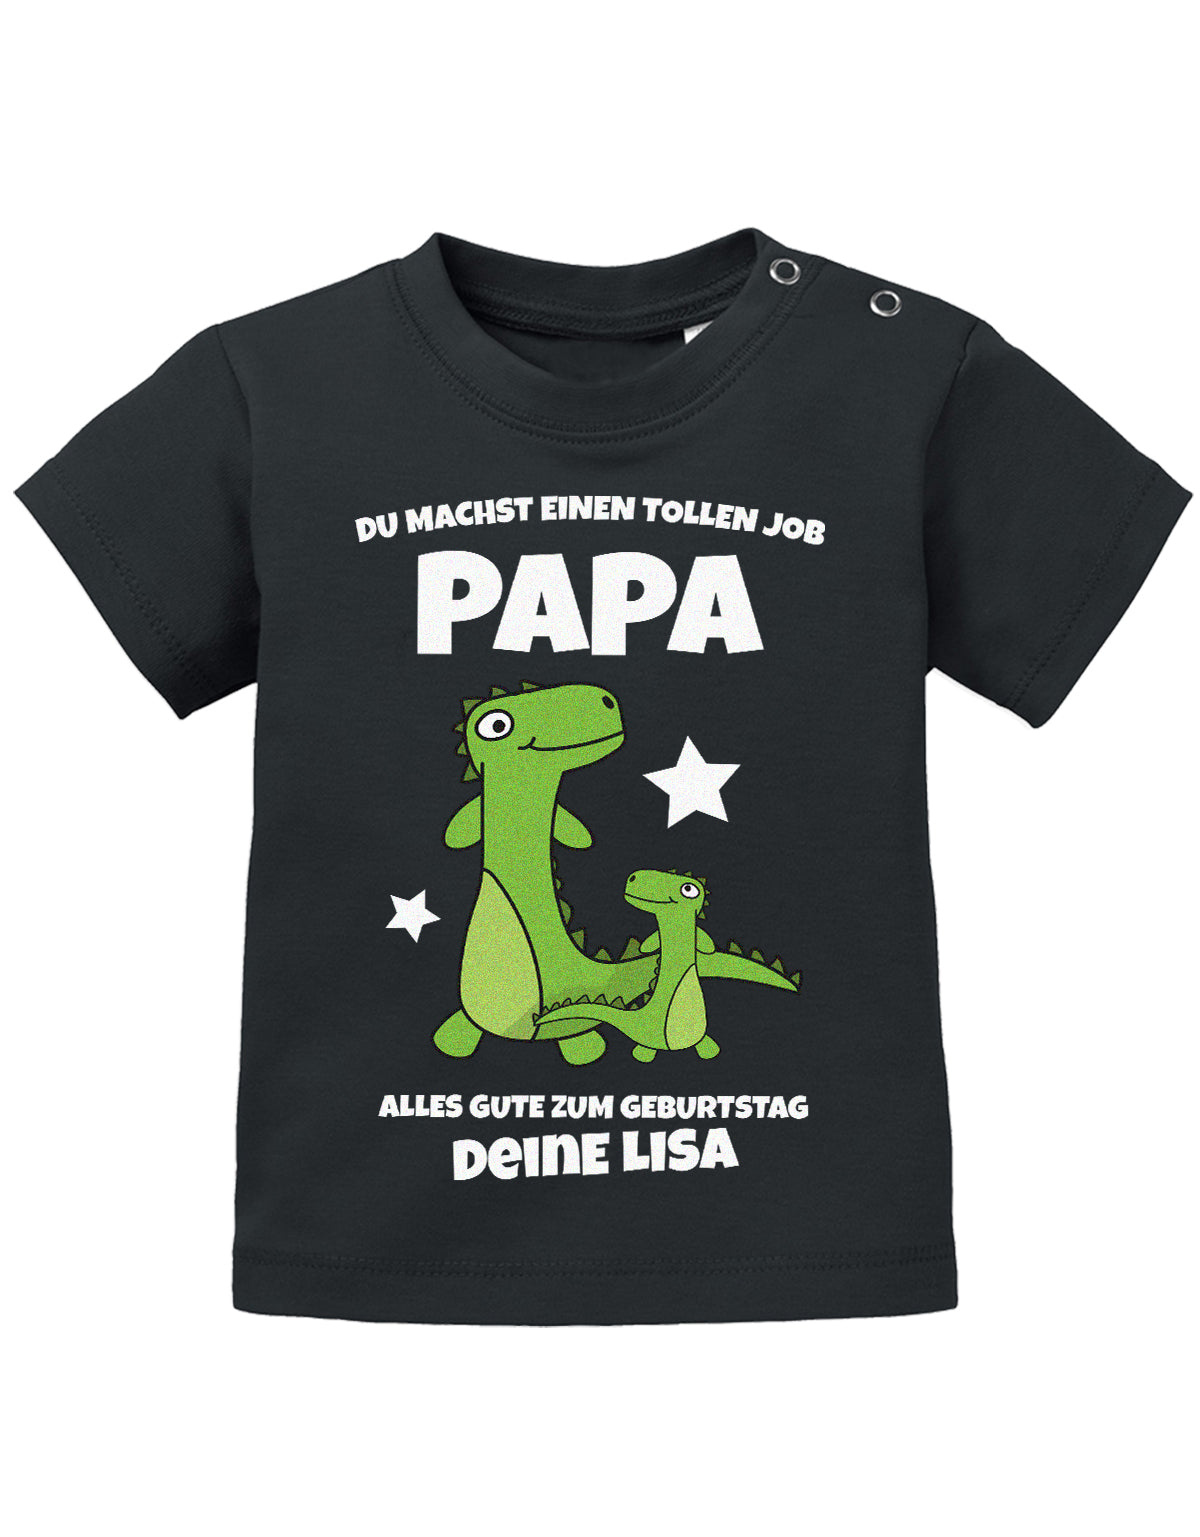 Papa Spruch Baby Shirt. Du machst einen tollen Job, Papa. Alles Gute zum Geburtstag. Personalisiert mit Namen. SChwarz